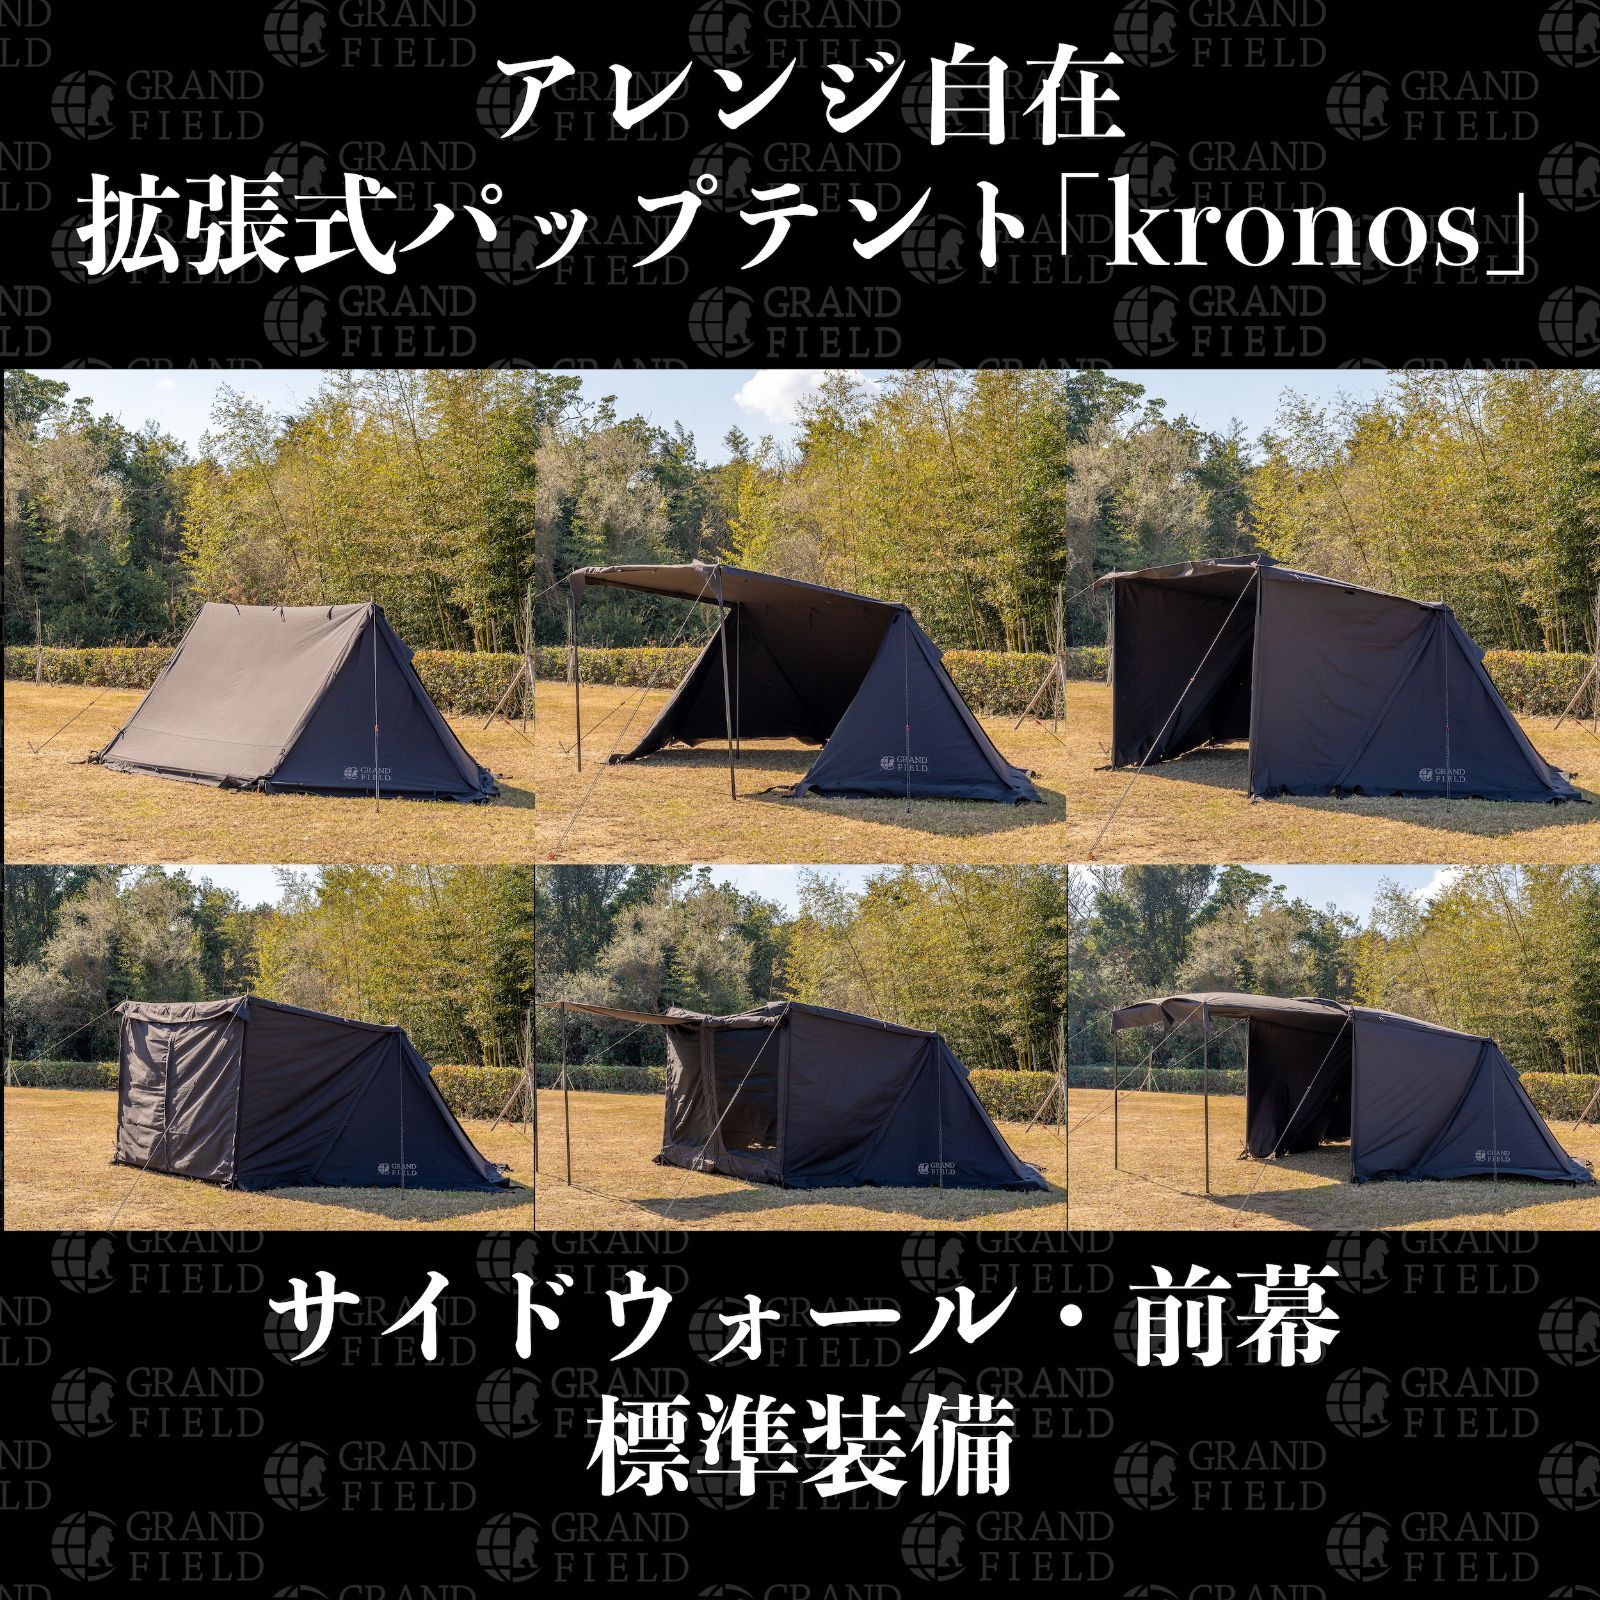 GRAND FIELD 拡張式パップテント｢クロノス｣ ソロキャンプ アウトドア